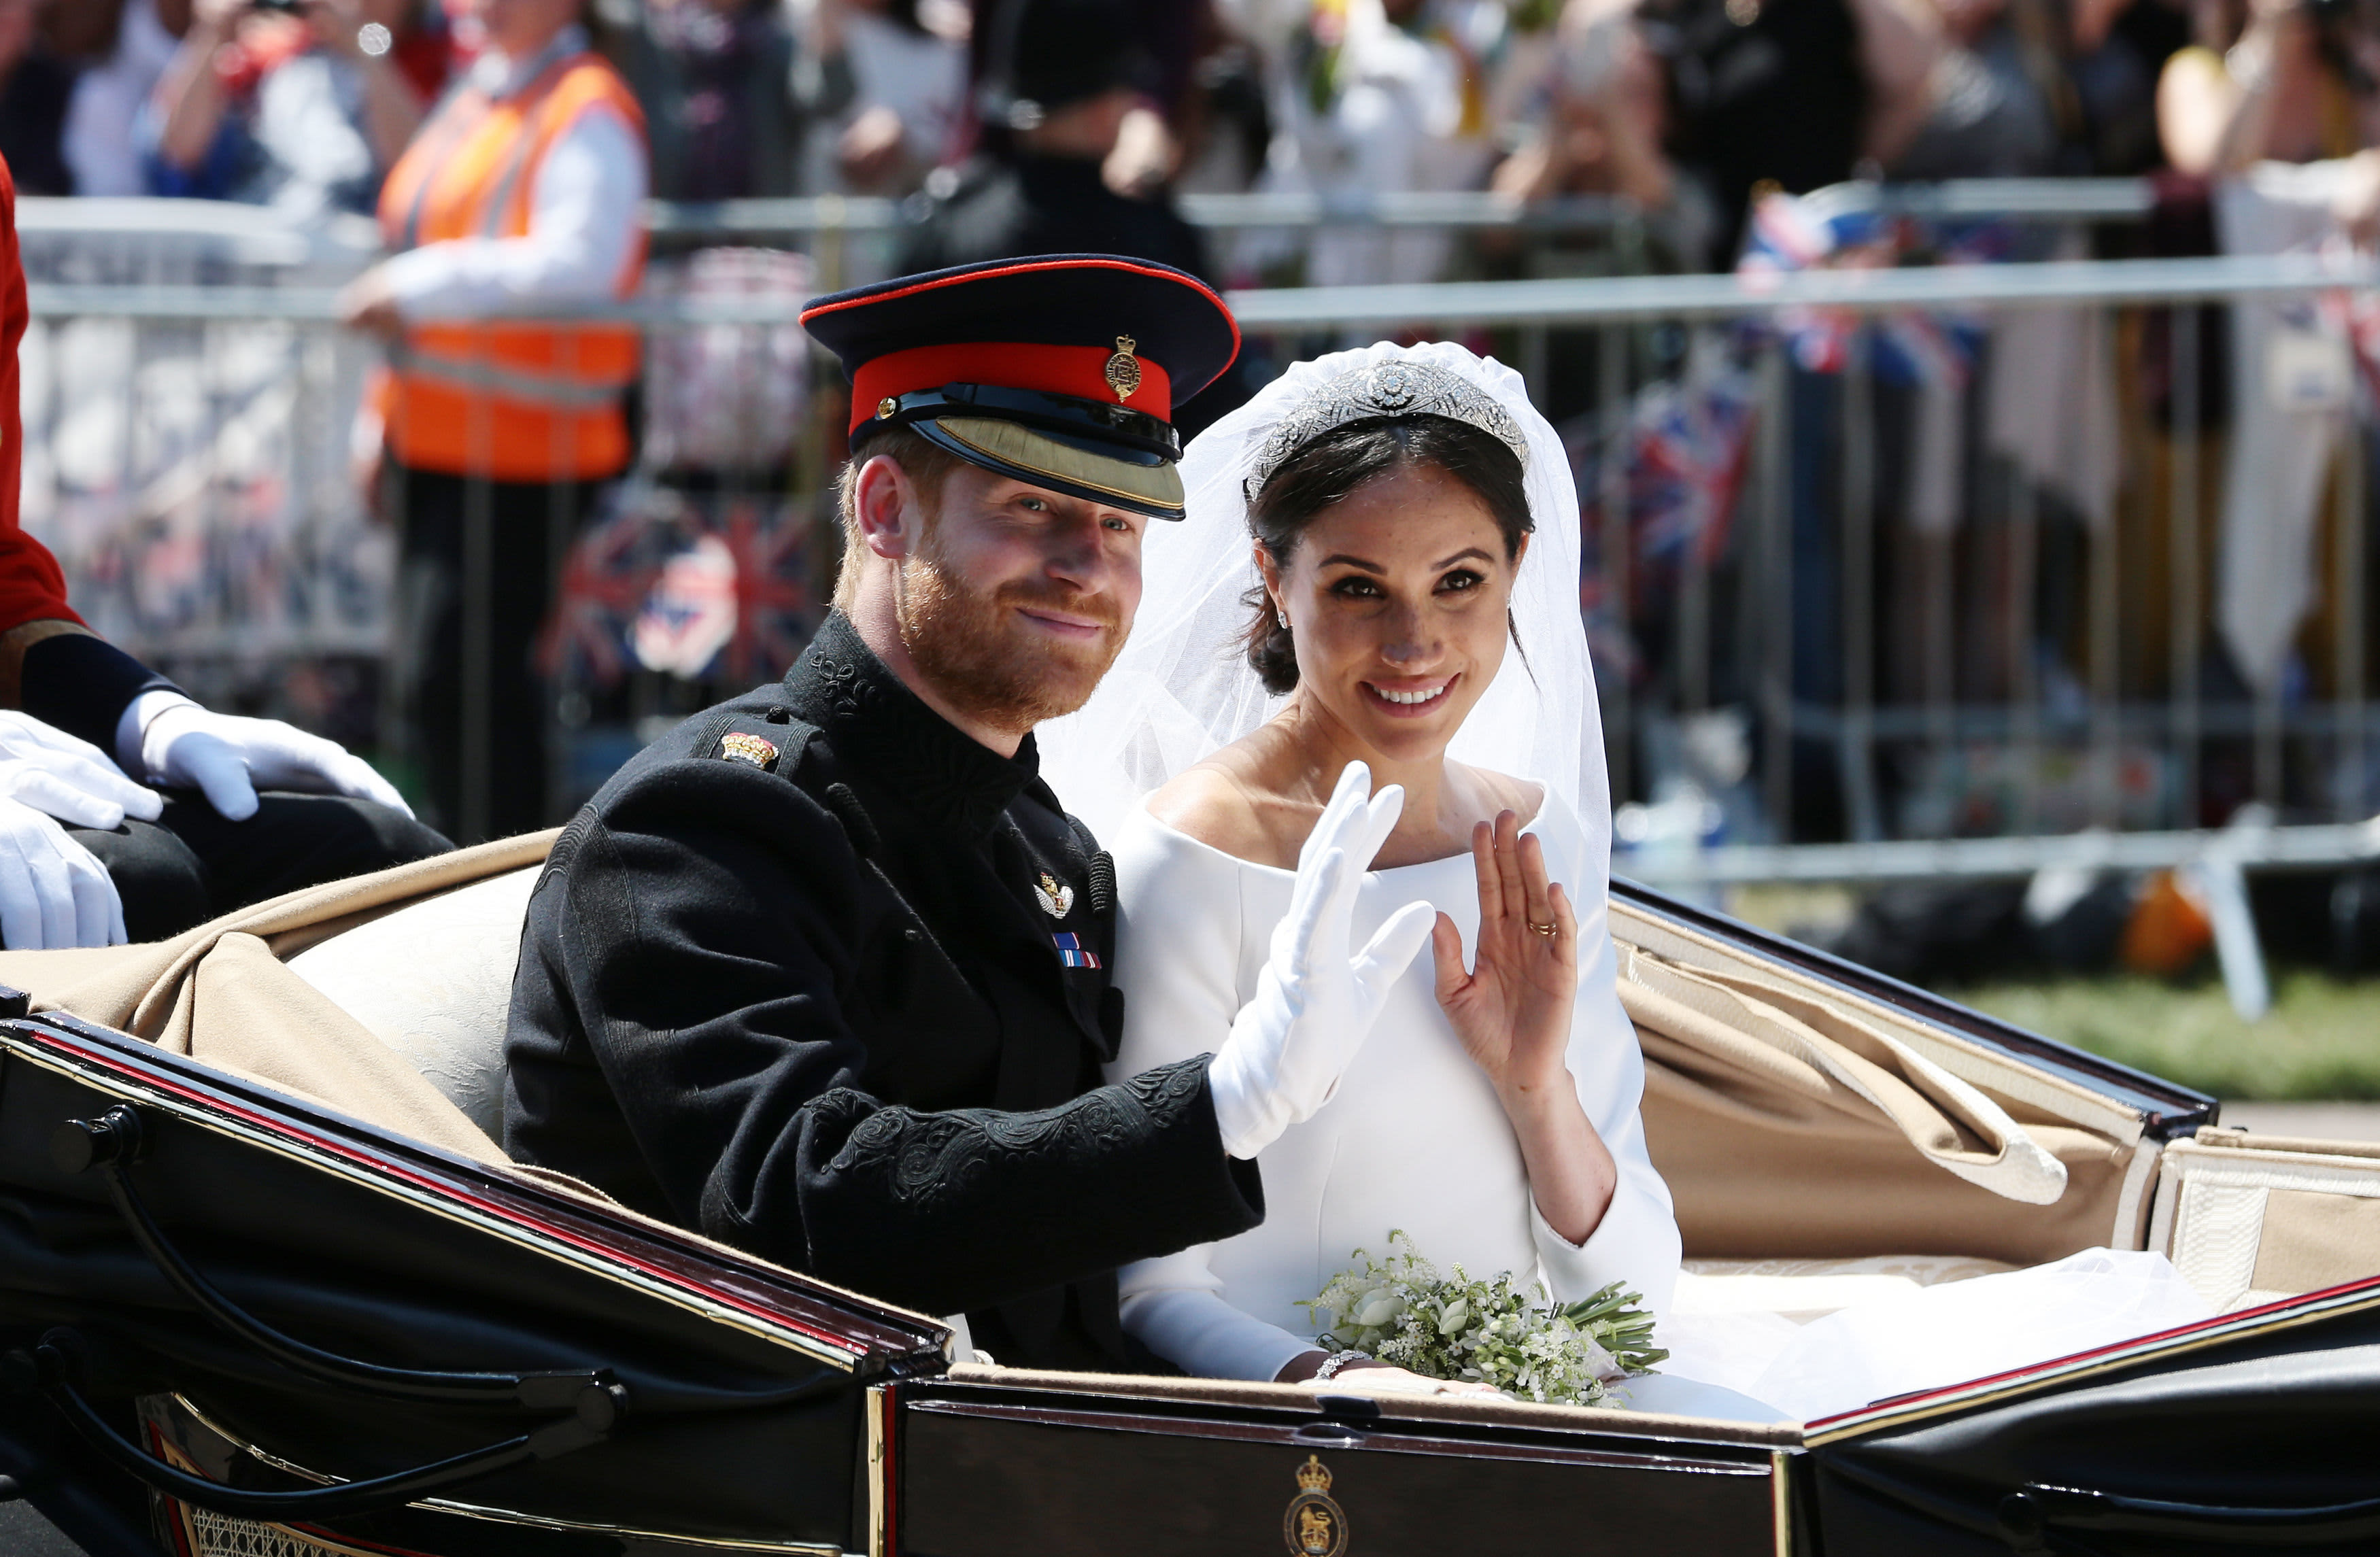 Ratings for Prince Harry and Meghan Markle royal wedding